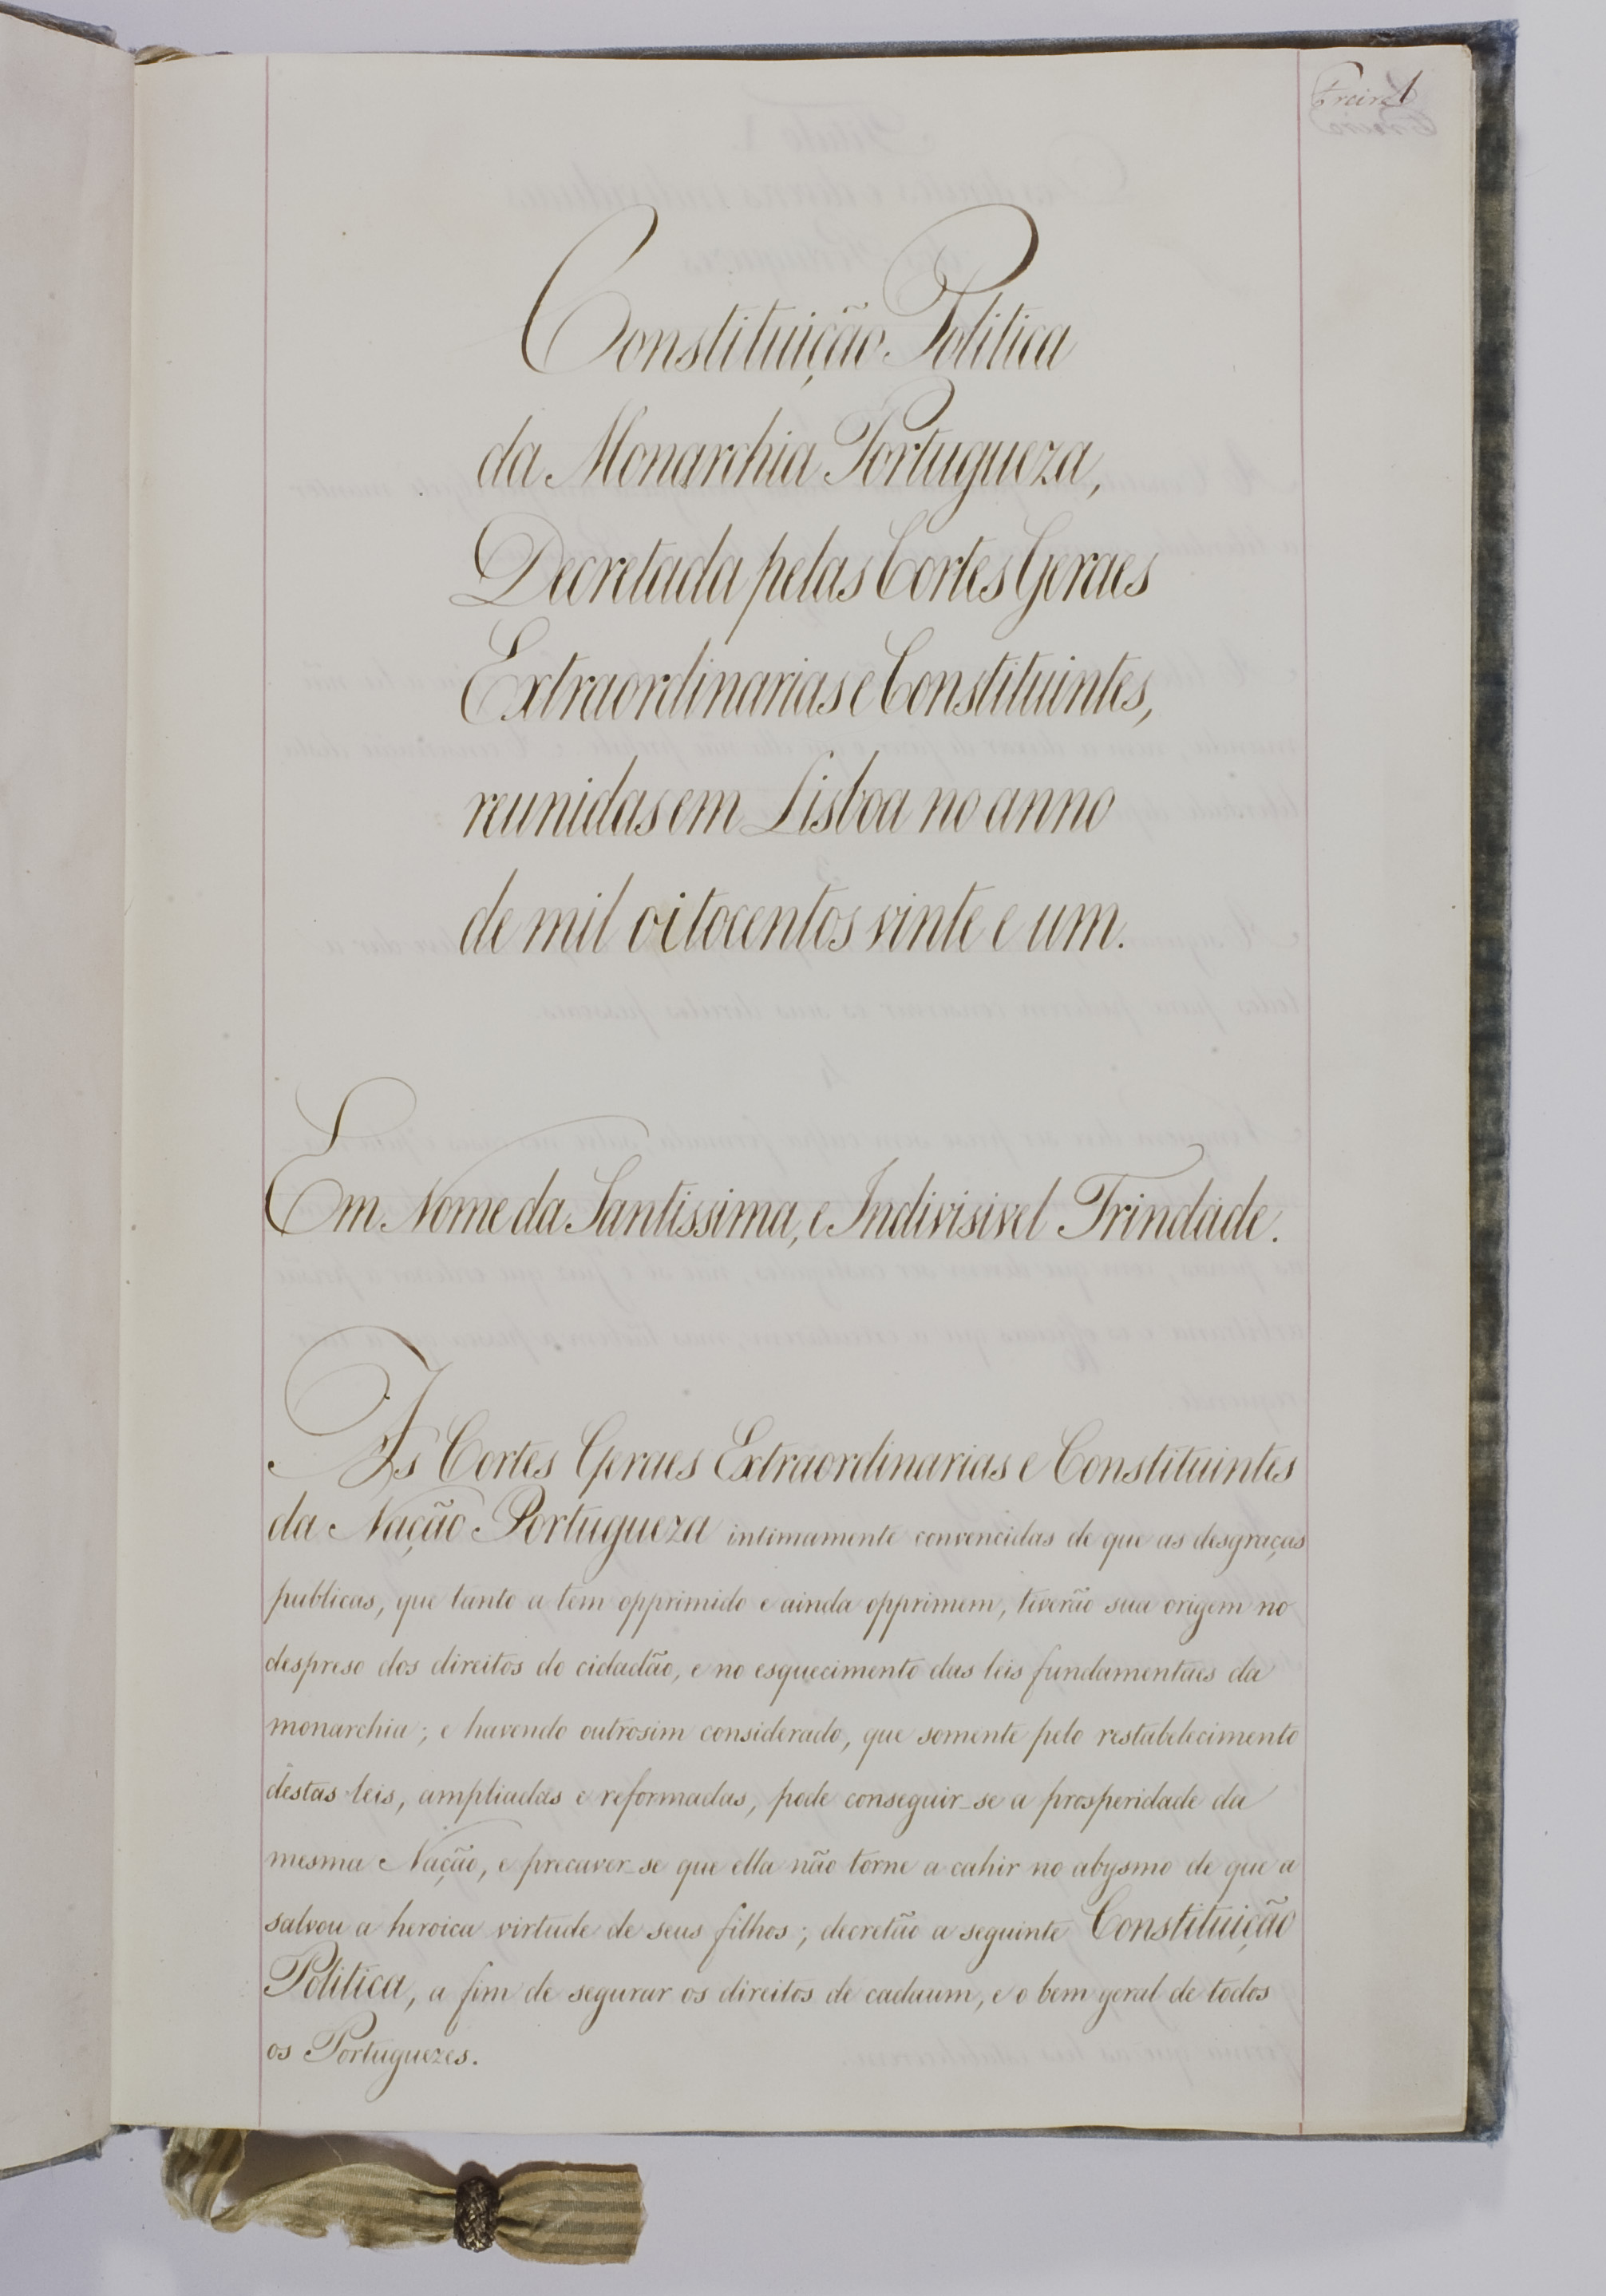  Primeira página da Constituição de 1822